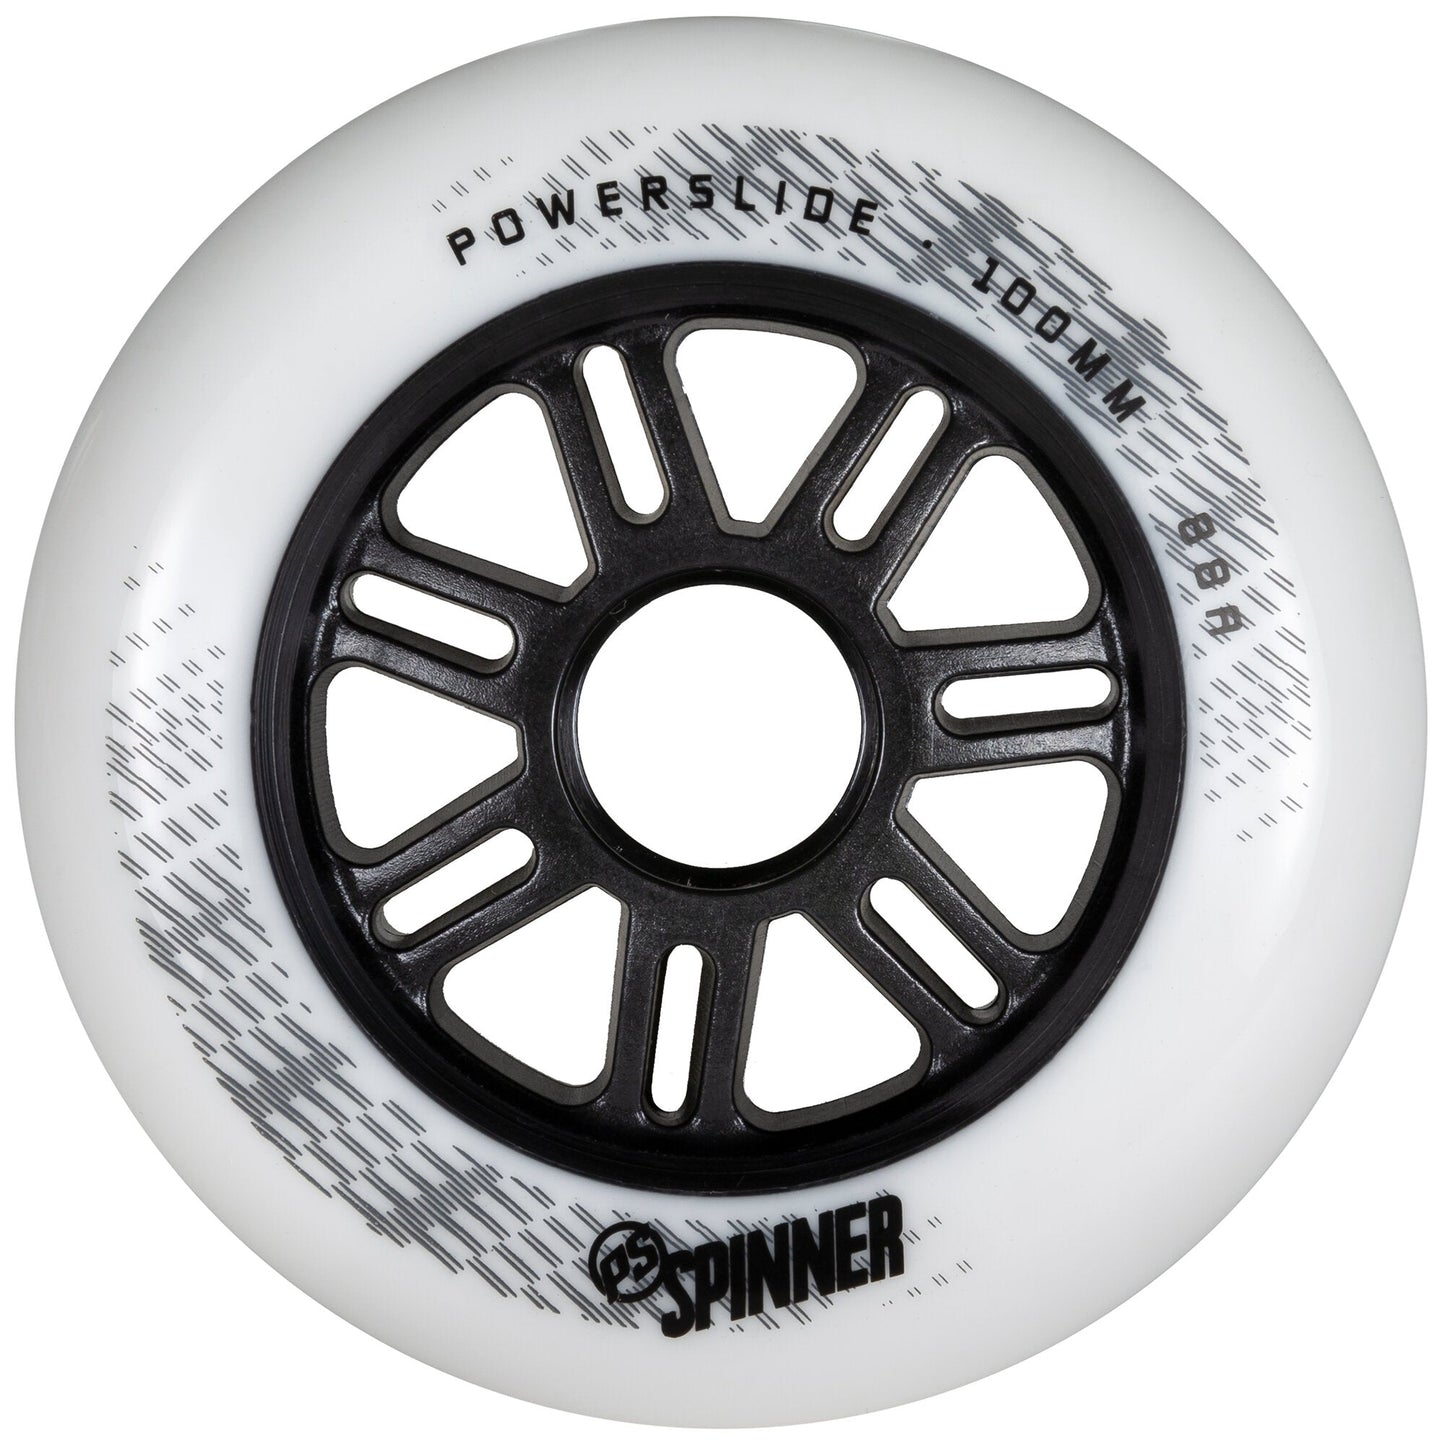 Powerslide Spinner 100mm Wheels